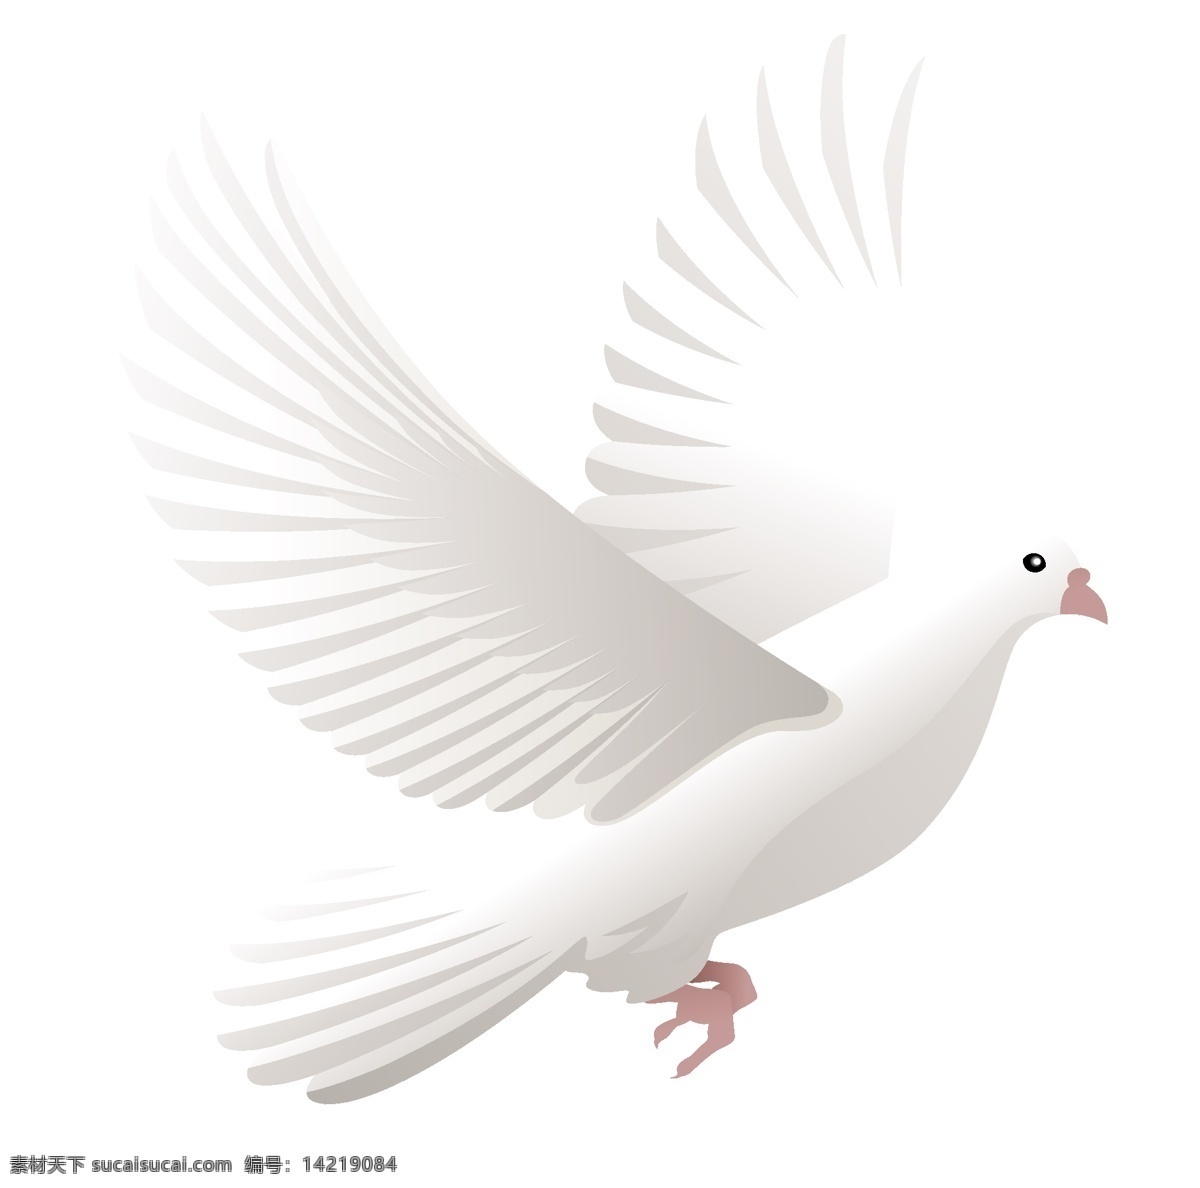 鸽子免费下载 矢量图 白色和平鸽 象征和平 其他矢量图